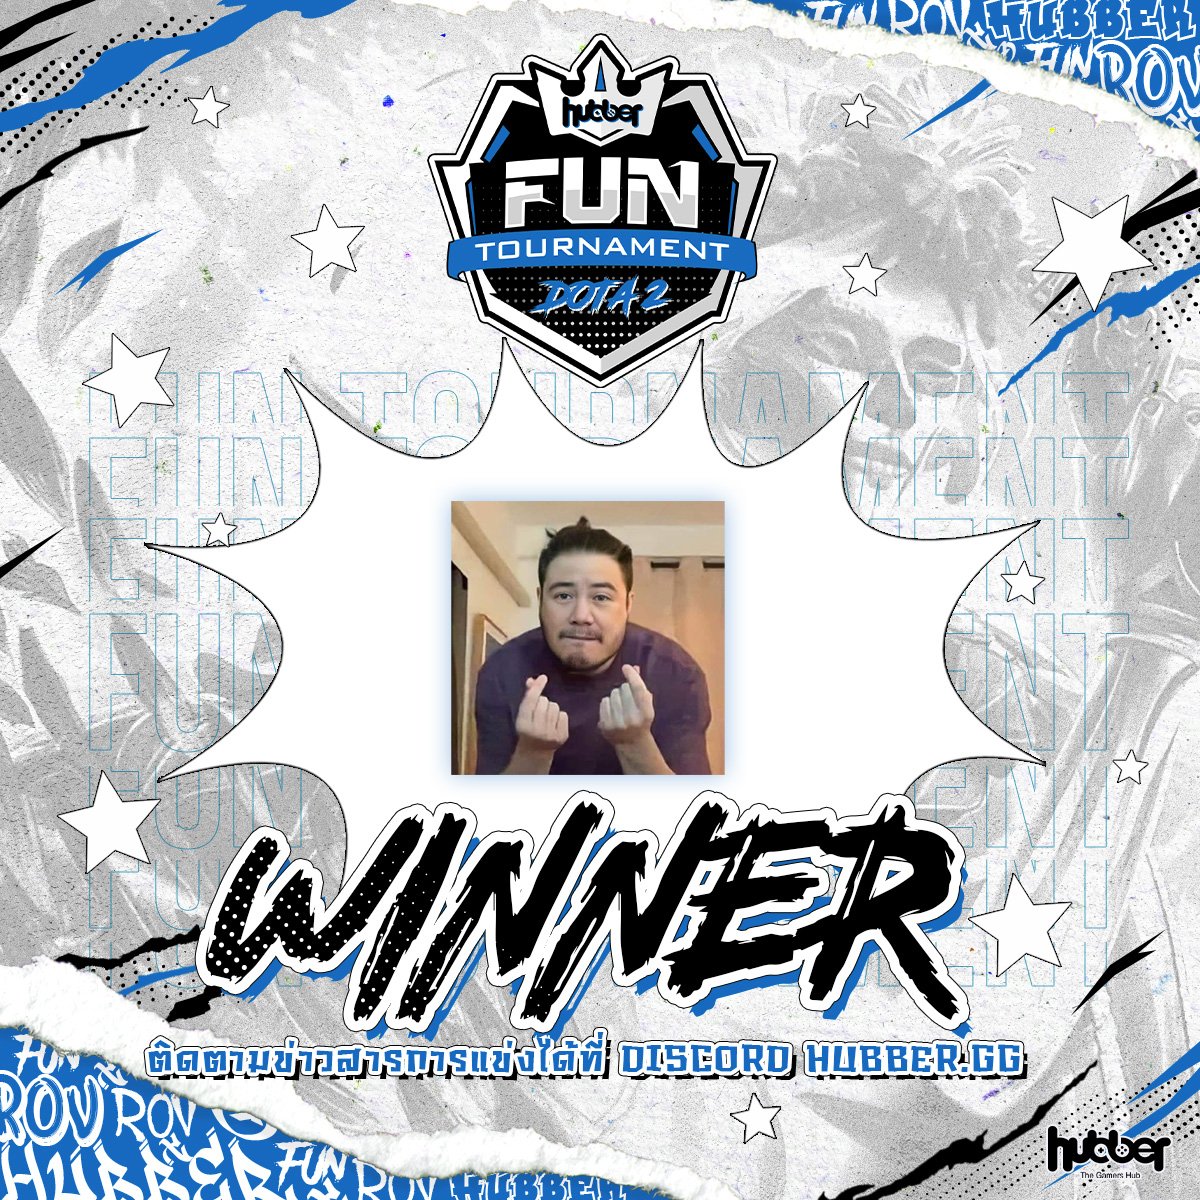 ขอแสดงความยินดีกับทีม ilovekorea 🎊🎉
ที่สามารถคว้าแชมป์การแข่งขันทัวร์นาเมนต์ DOTA 2 รายการ Hubber Fun Tournament : DOTA 2 ประจำเดือนมกราคม 2566 ครั้งที่ 1 และรับเงินรางวัลมูลค่า 600 บาท ไปครองได้สำเร็จ🏆

#HubberGG #TheGamersHub #HubberTIME #dota2